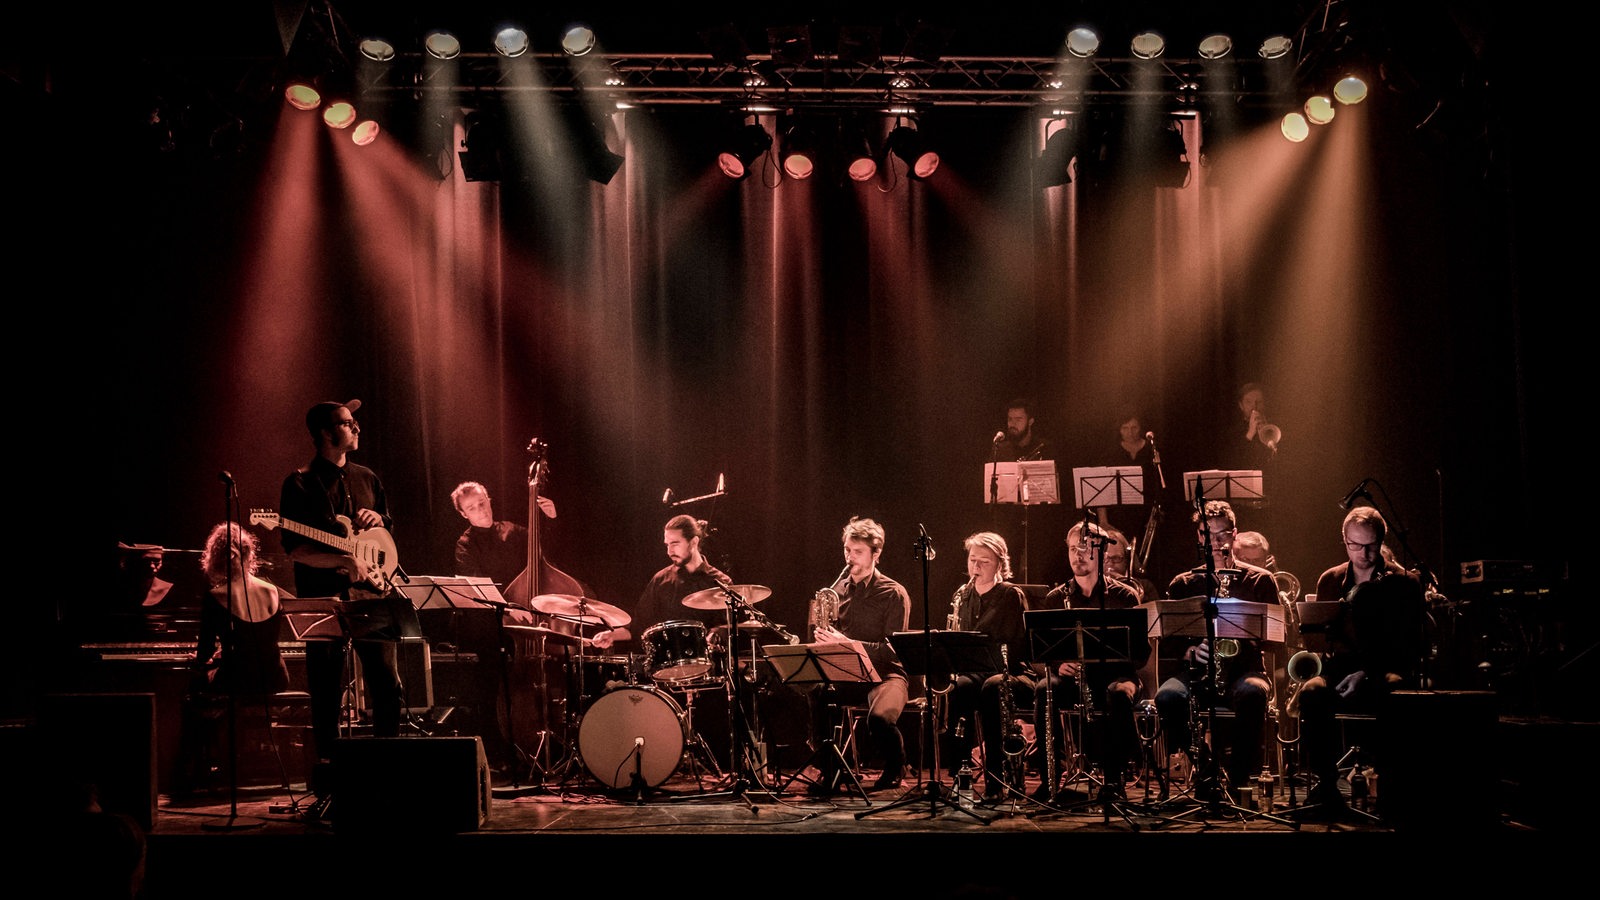 Kathrine Windfeld Big Band auf der Bühne in Dänemark 2019